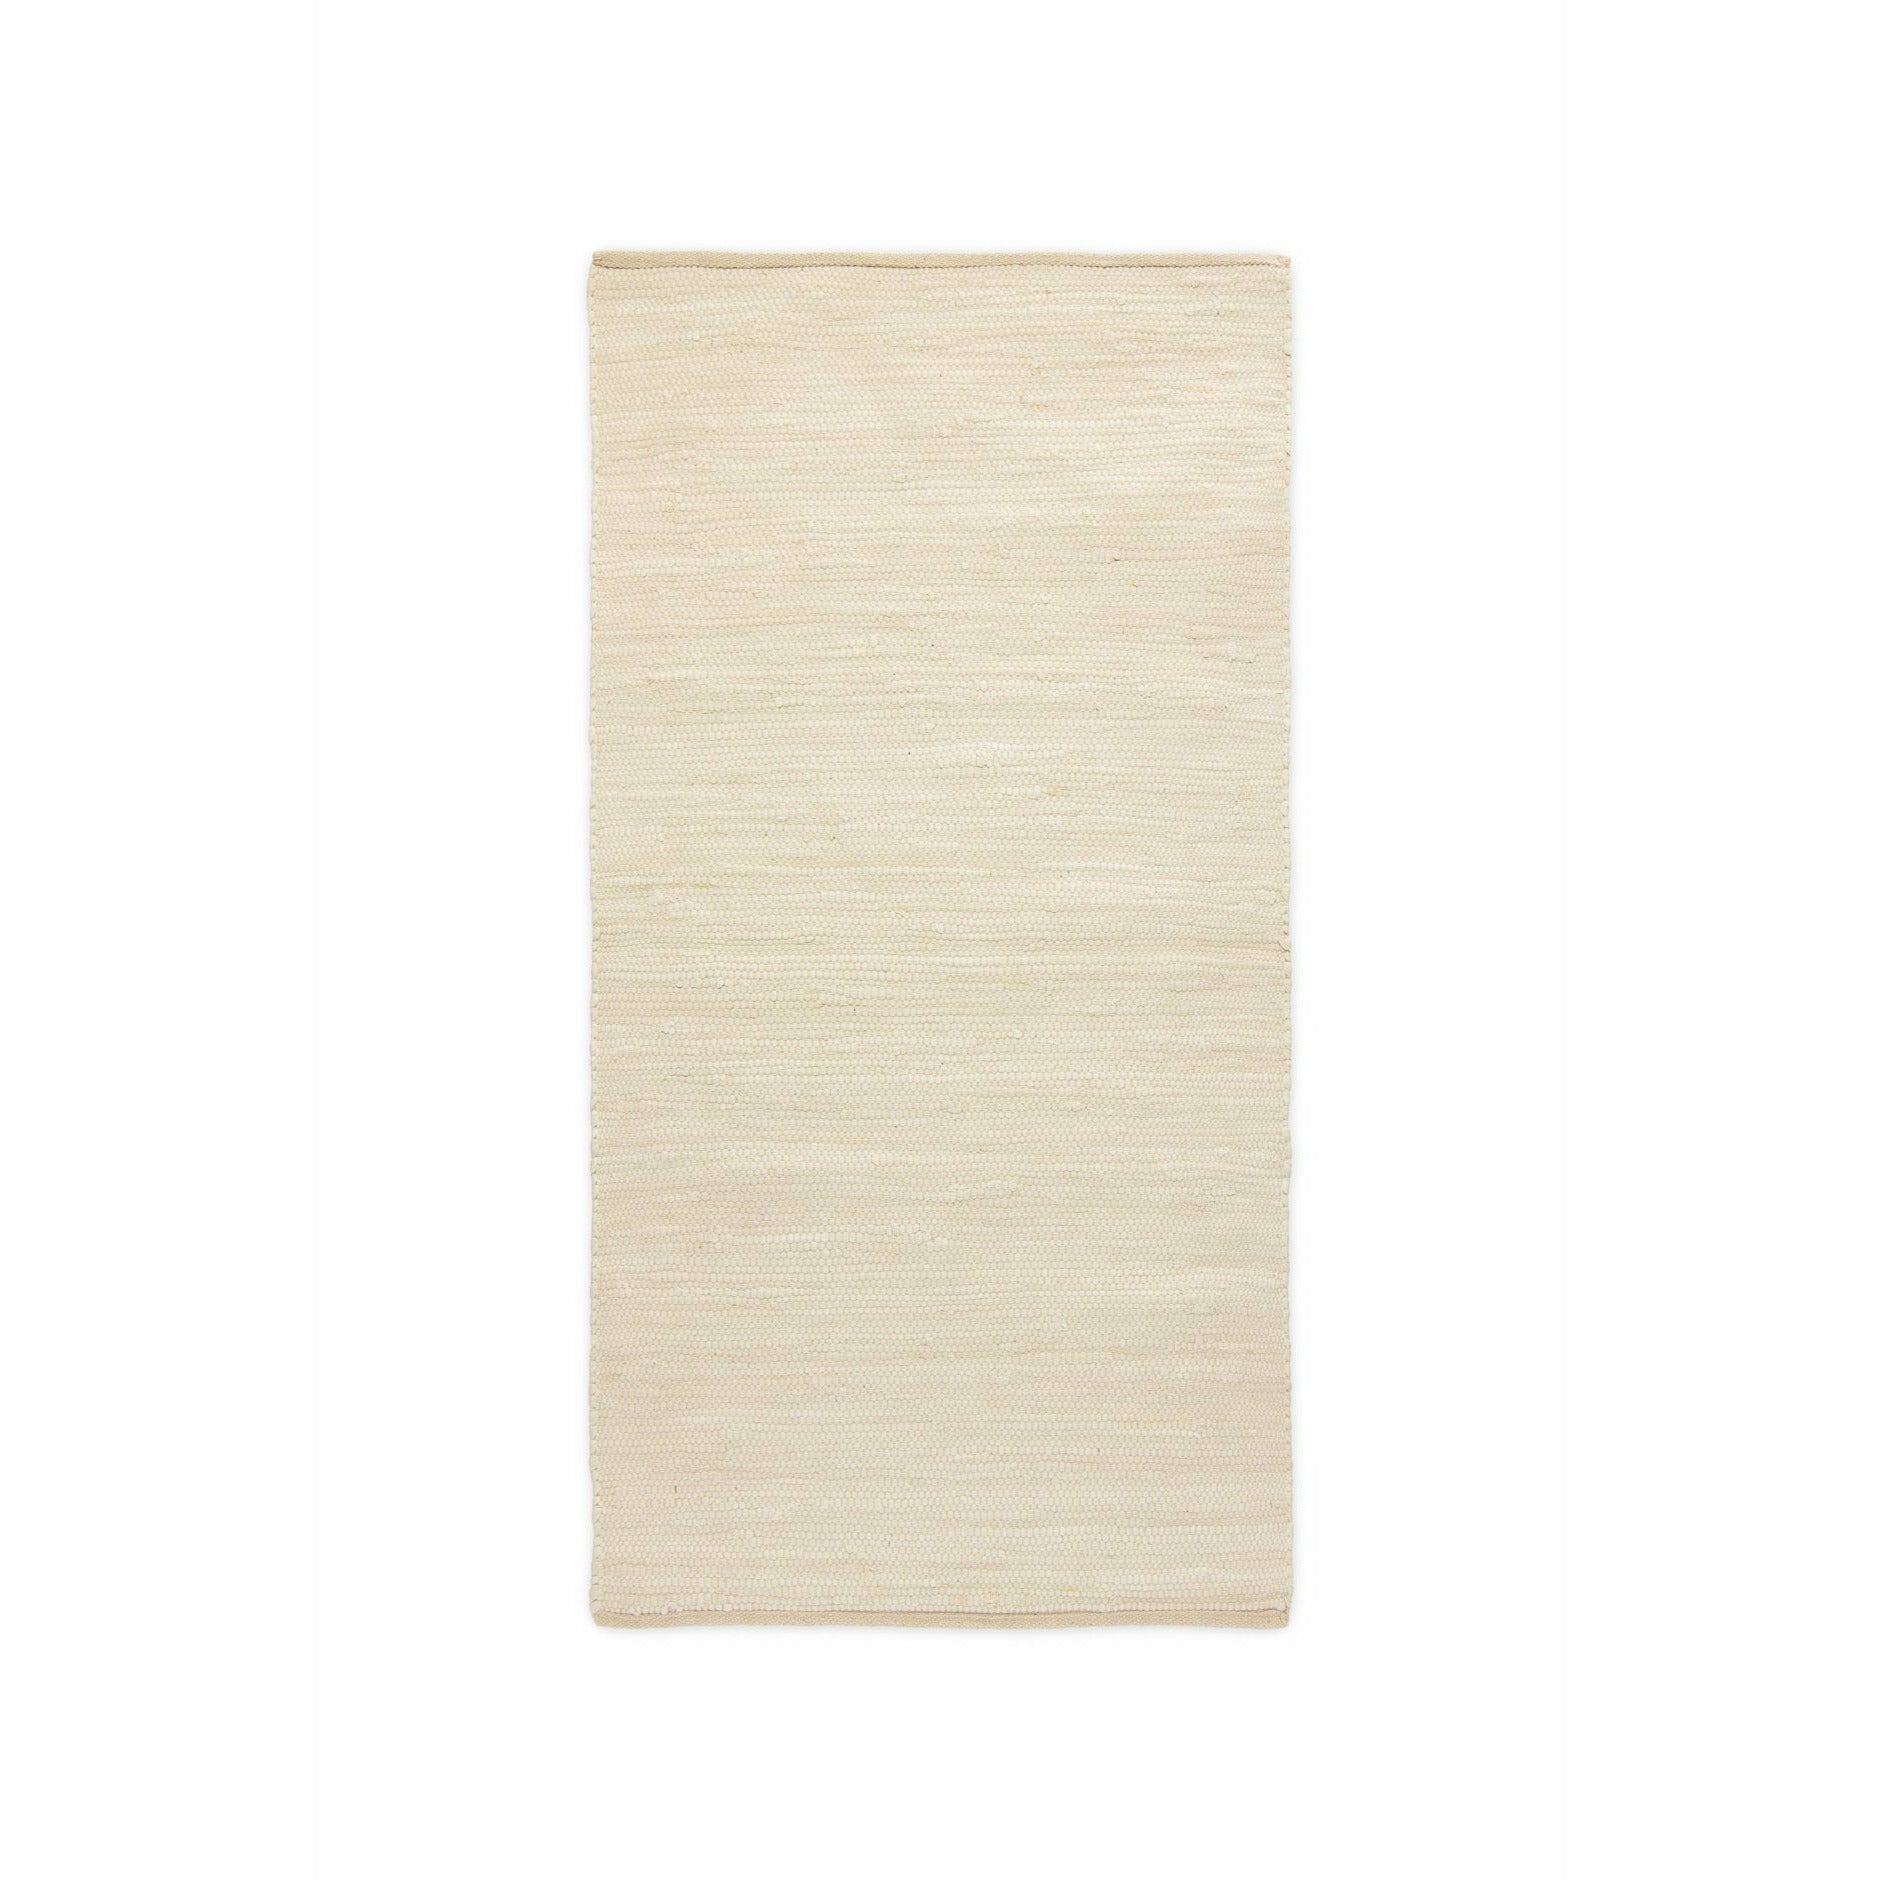 Tappeto deserto di tappeto in cotone solido bianco, 65 x 135 cm